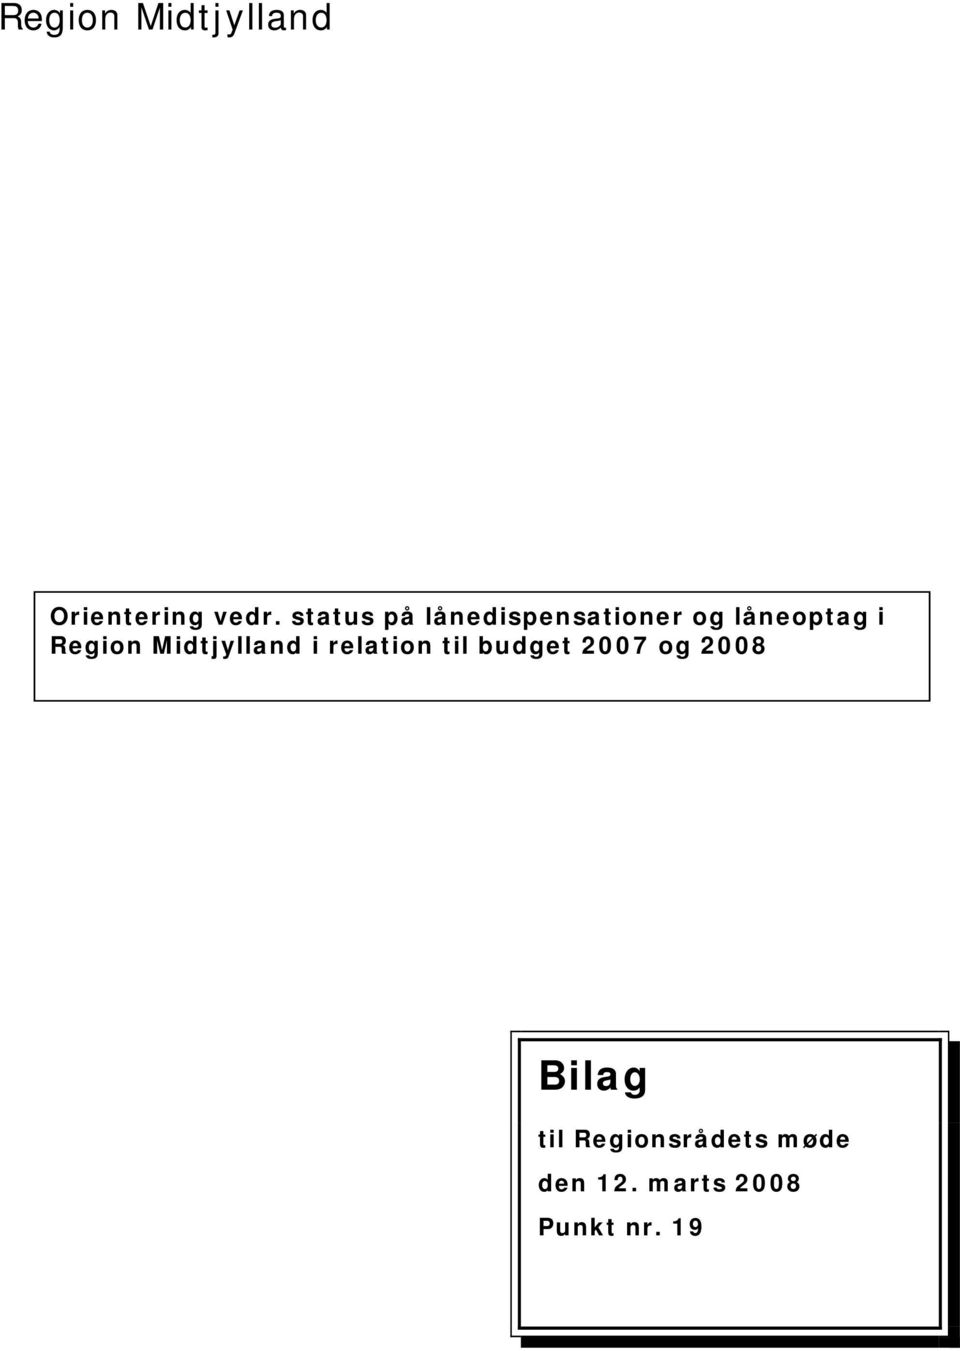 Region Midtjylland i relation til budget 2007 og